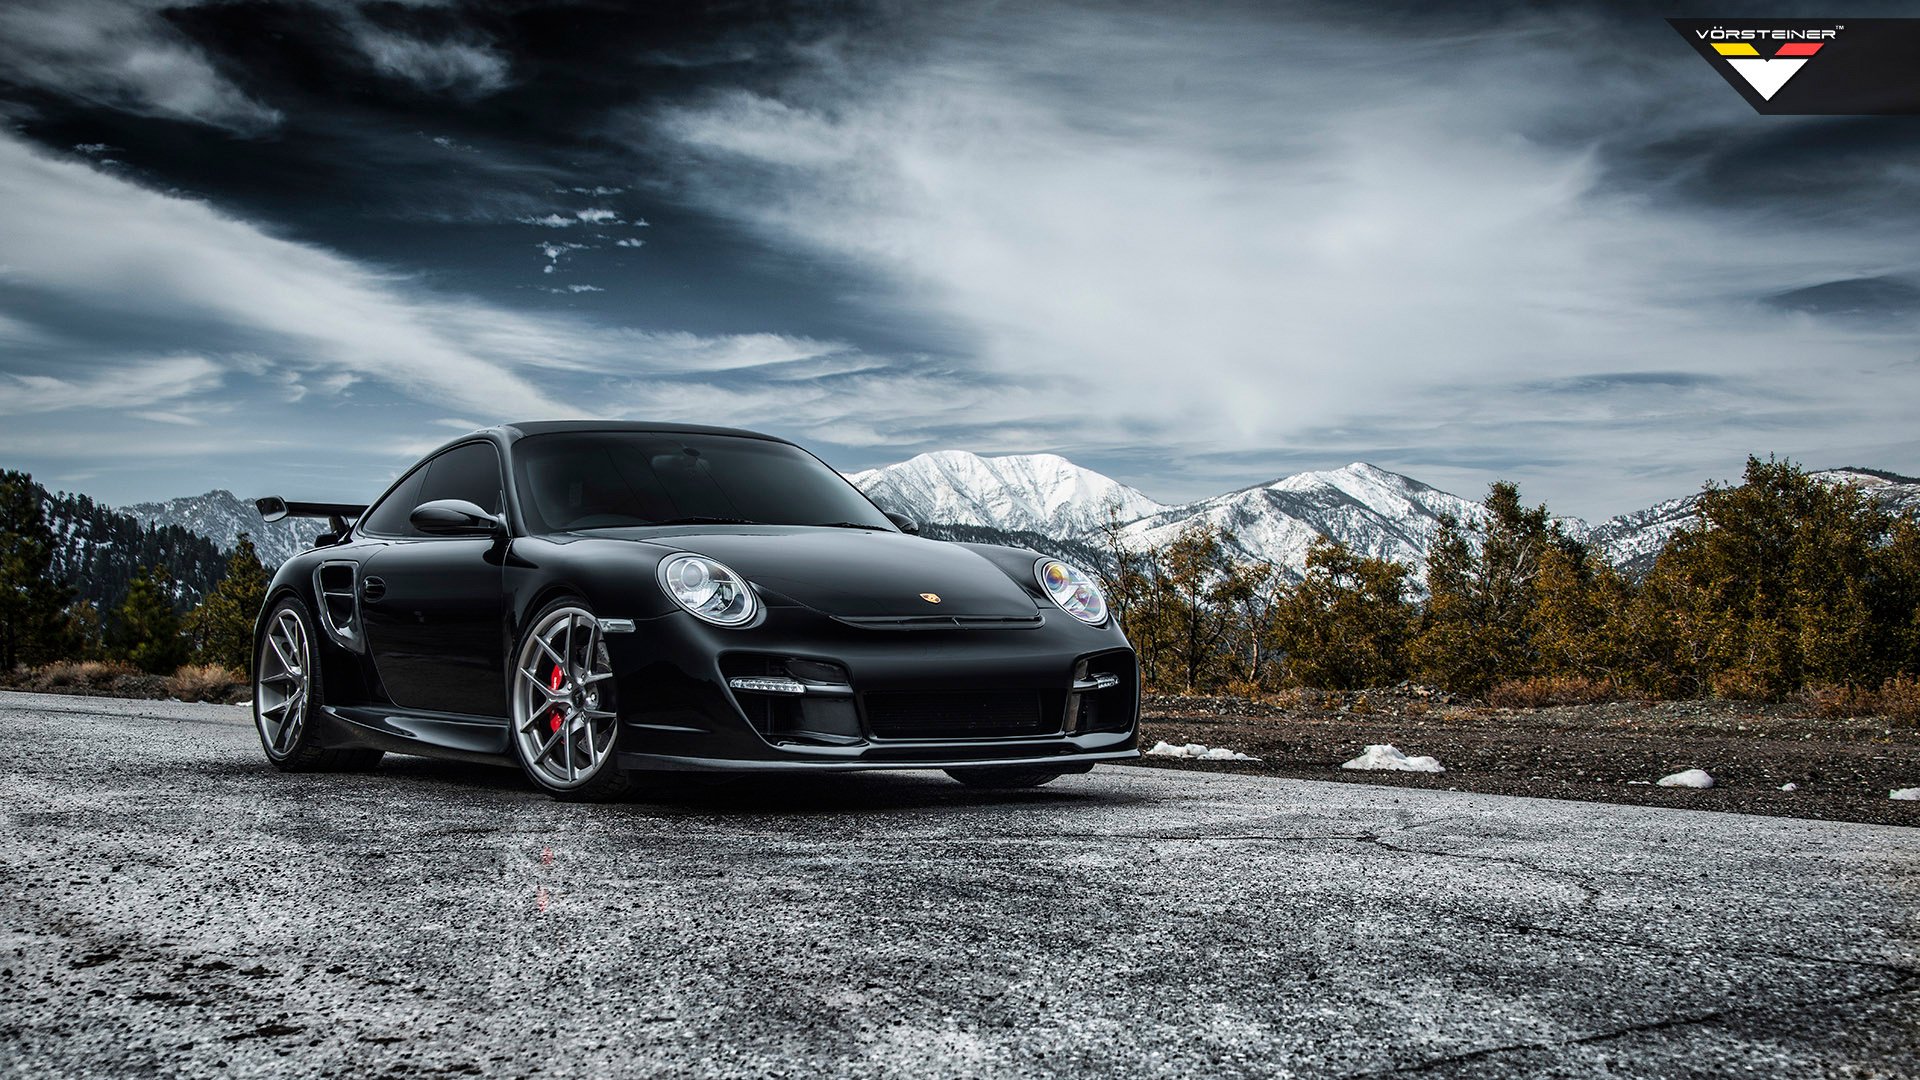 Porsche 911 Turbo Wallpapers